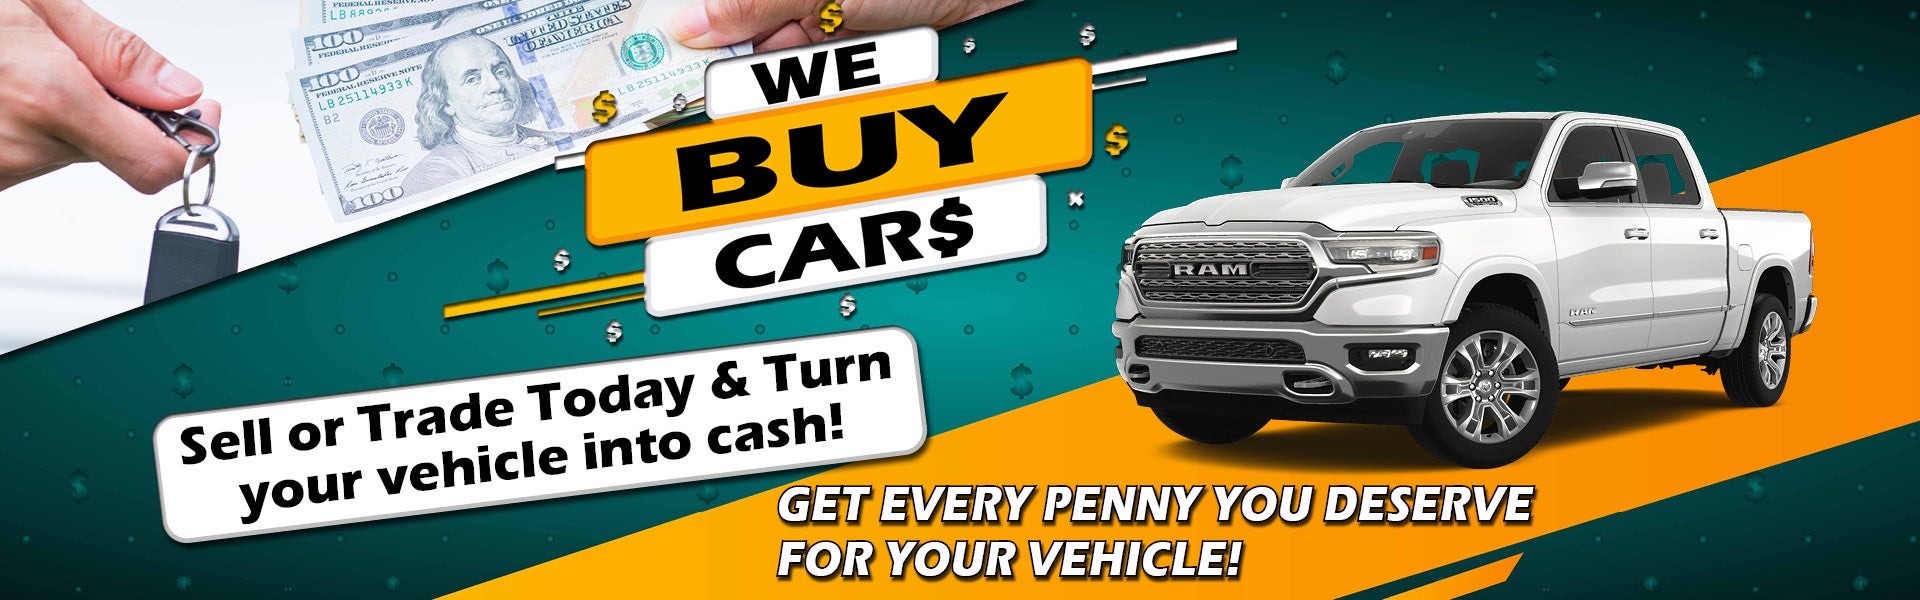 We Buy Cars Homepage Banner